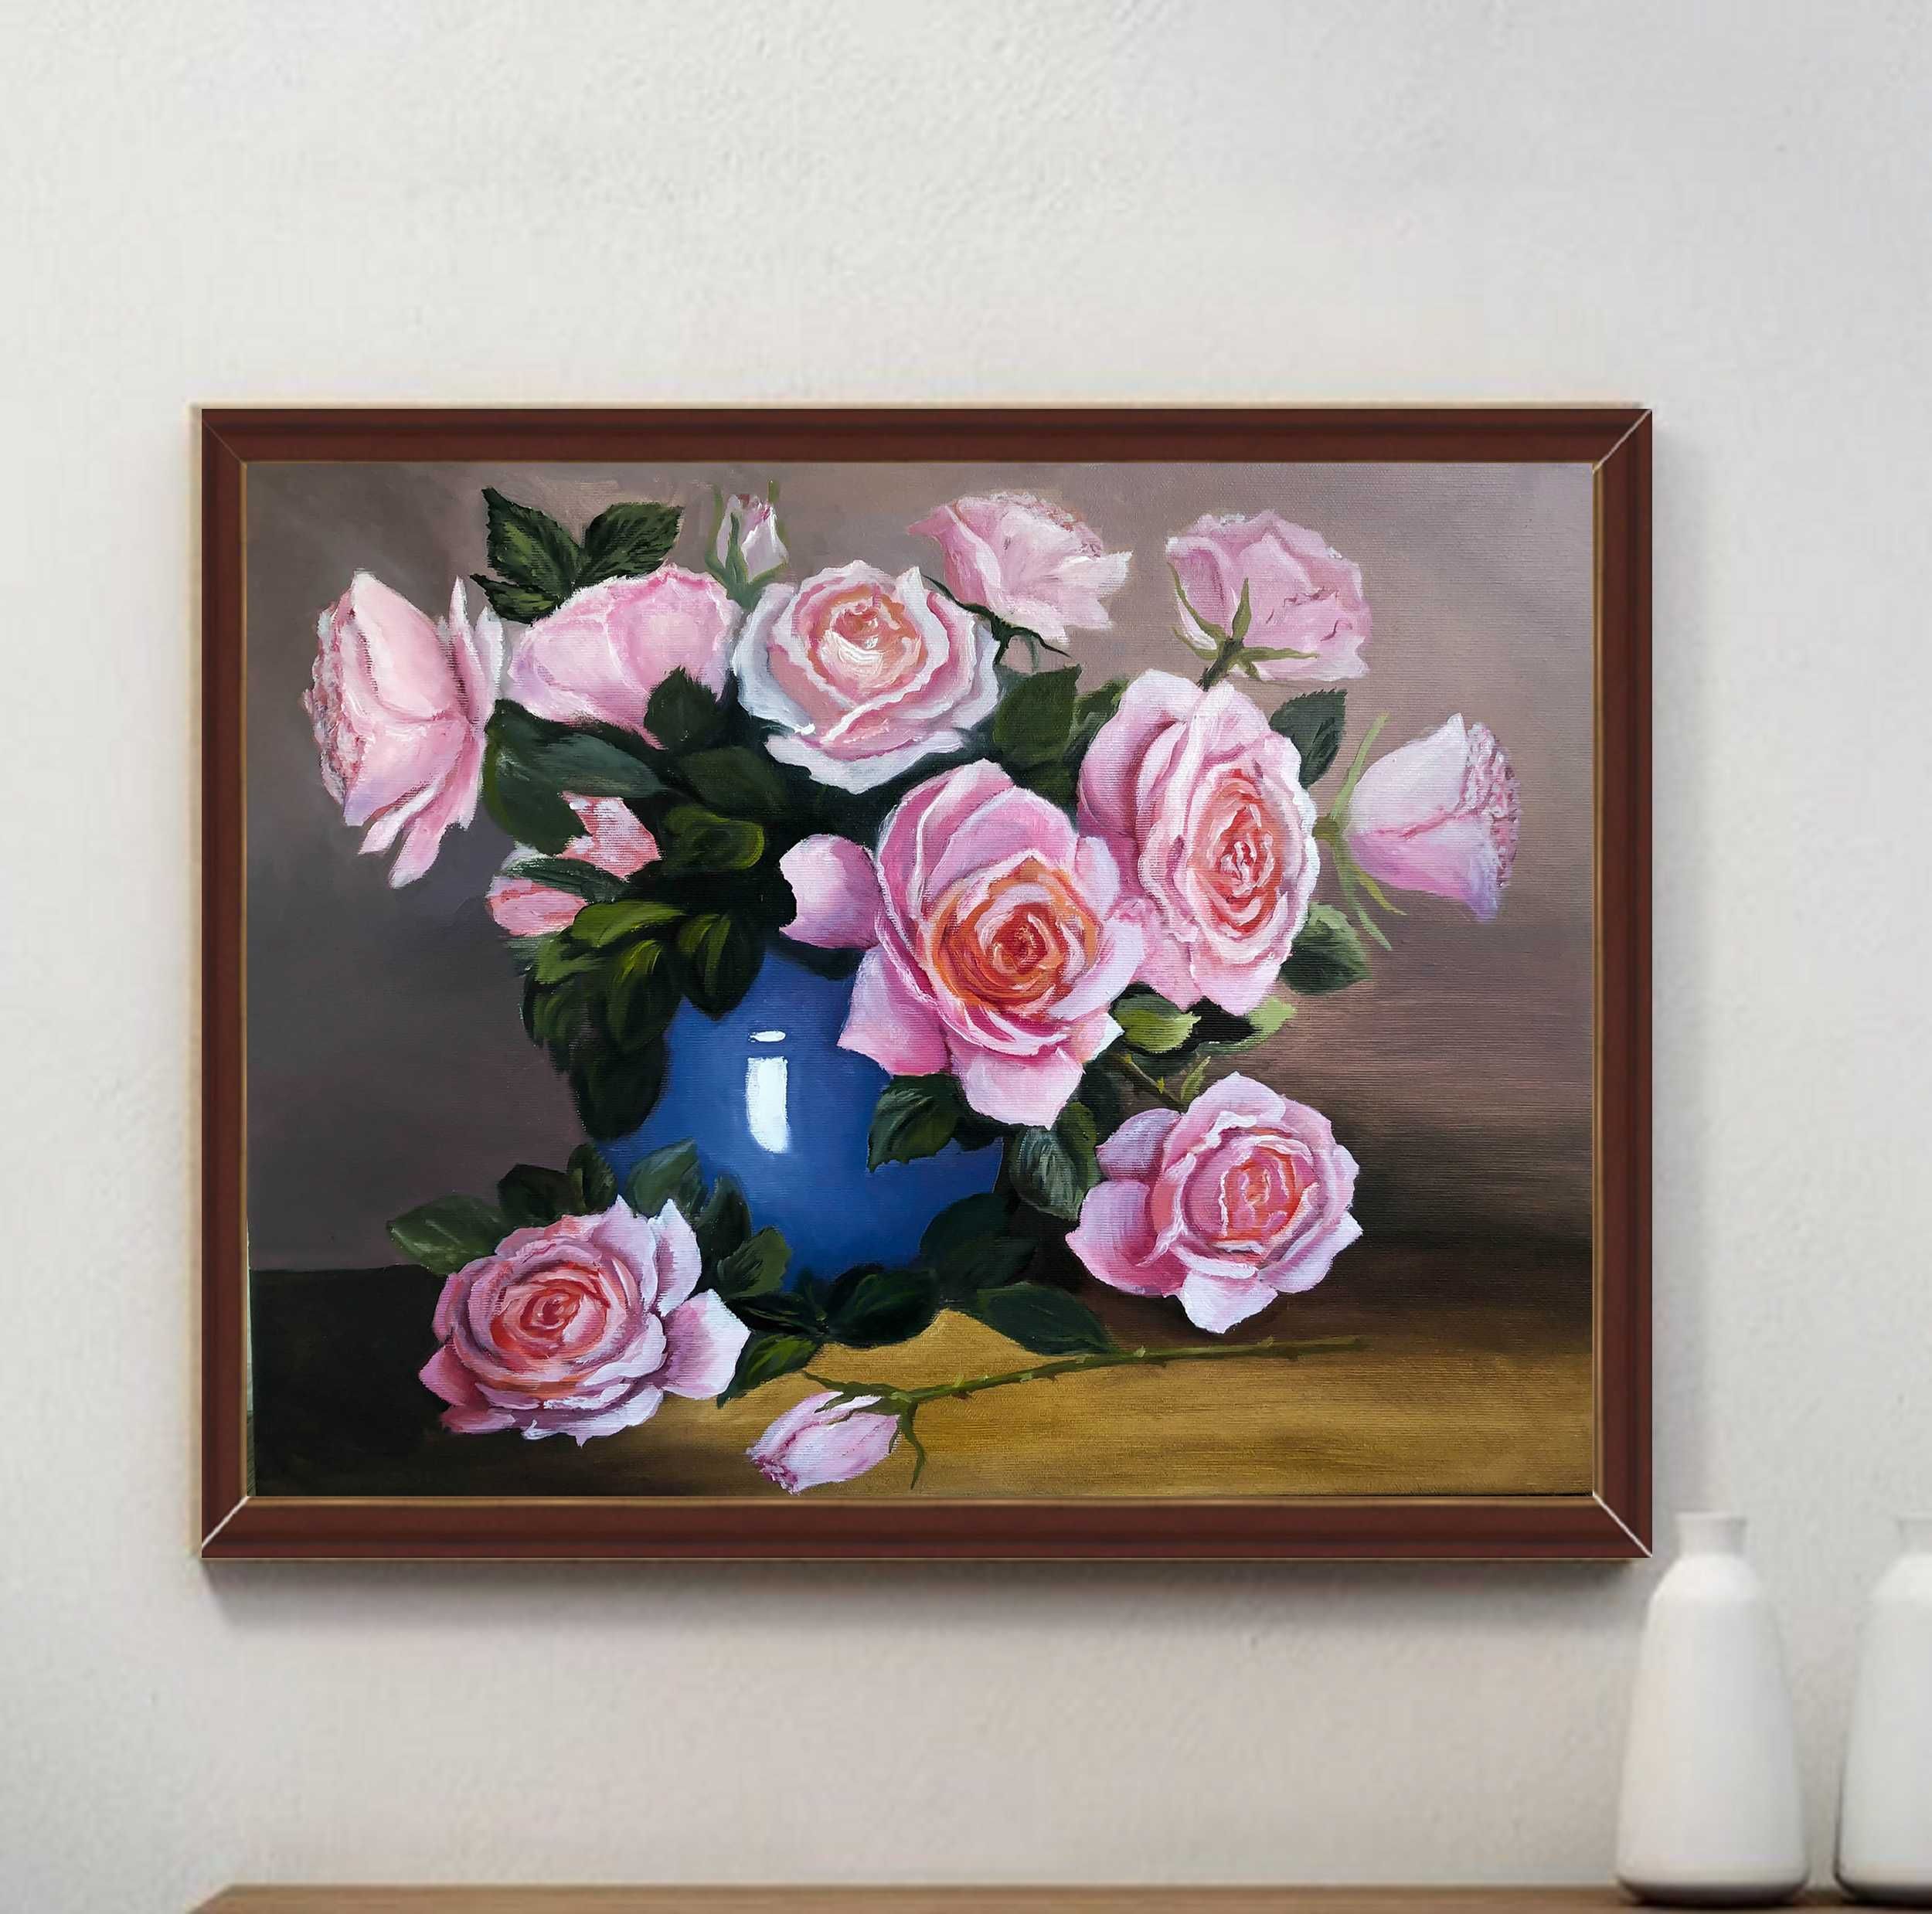 Картина з букетом троянд у вазі.Полотно 40*50, олія